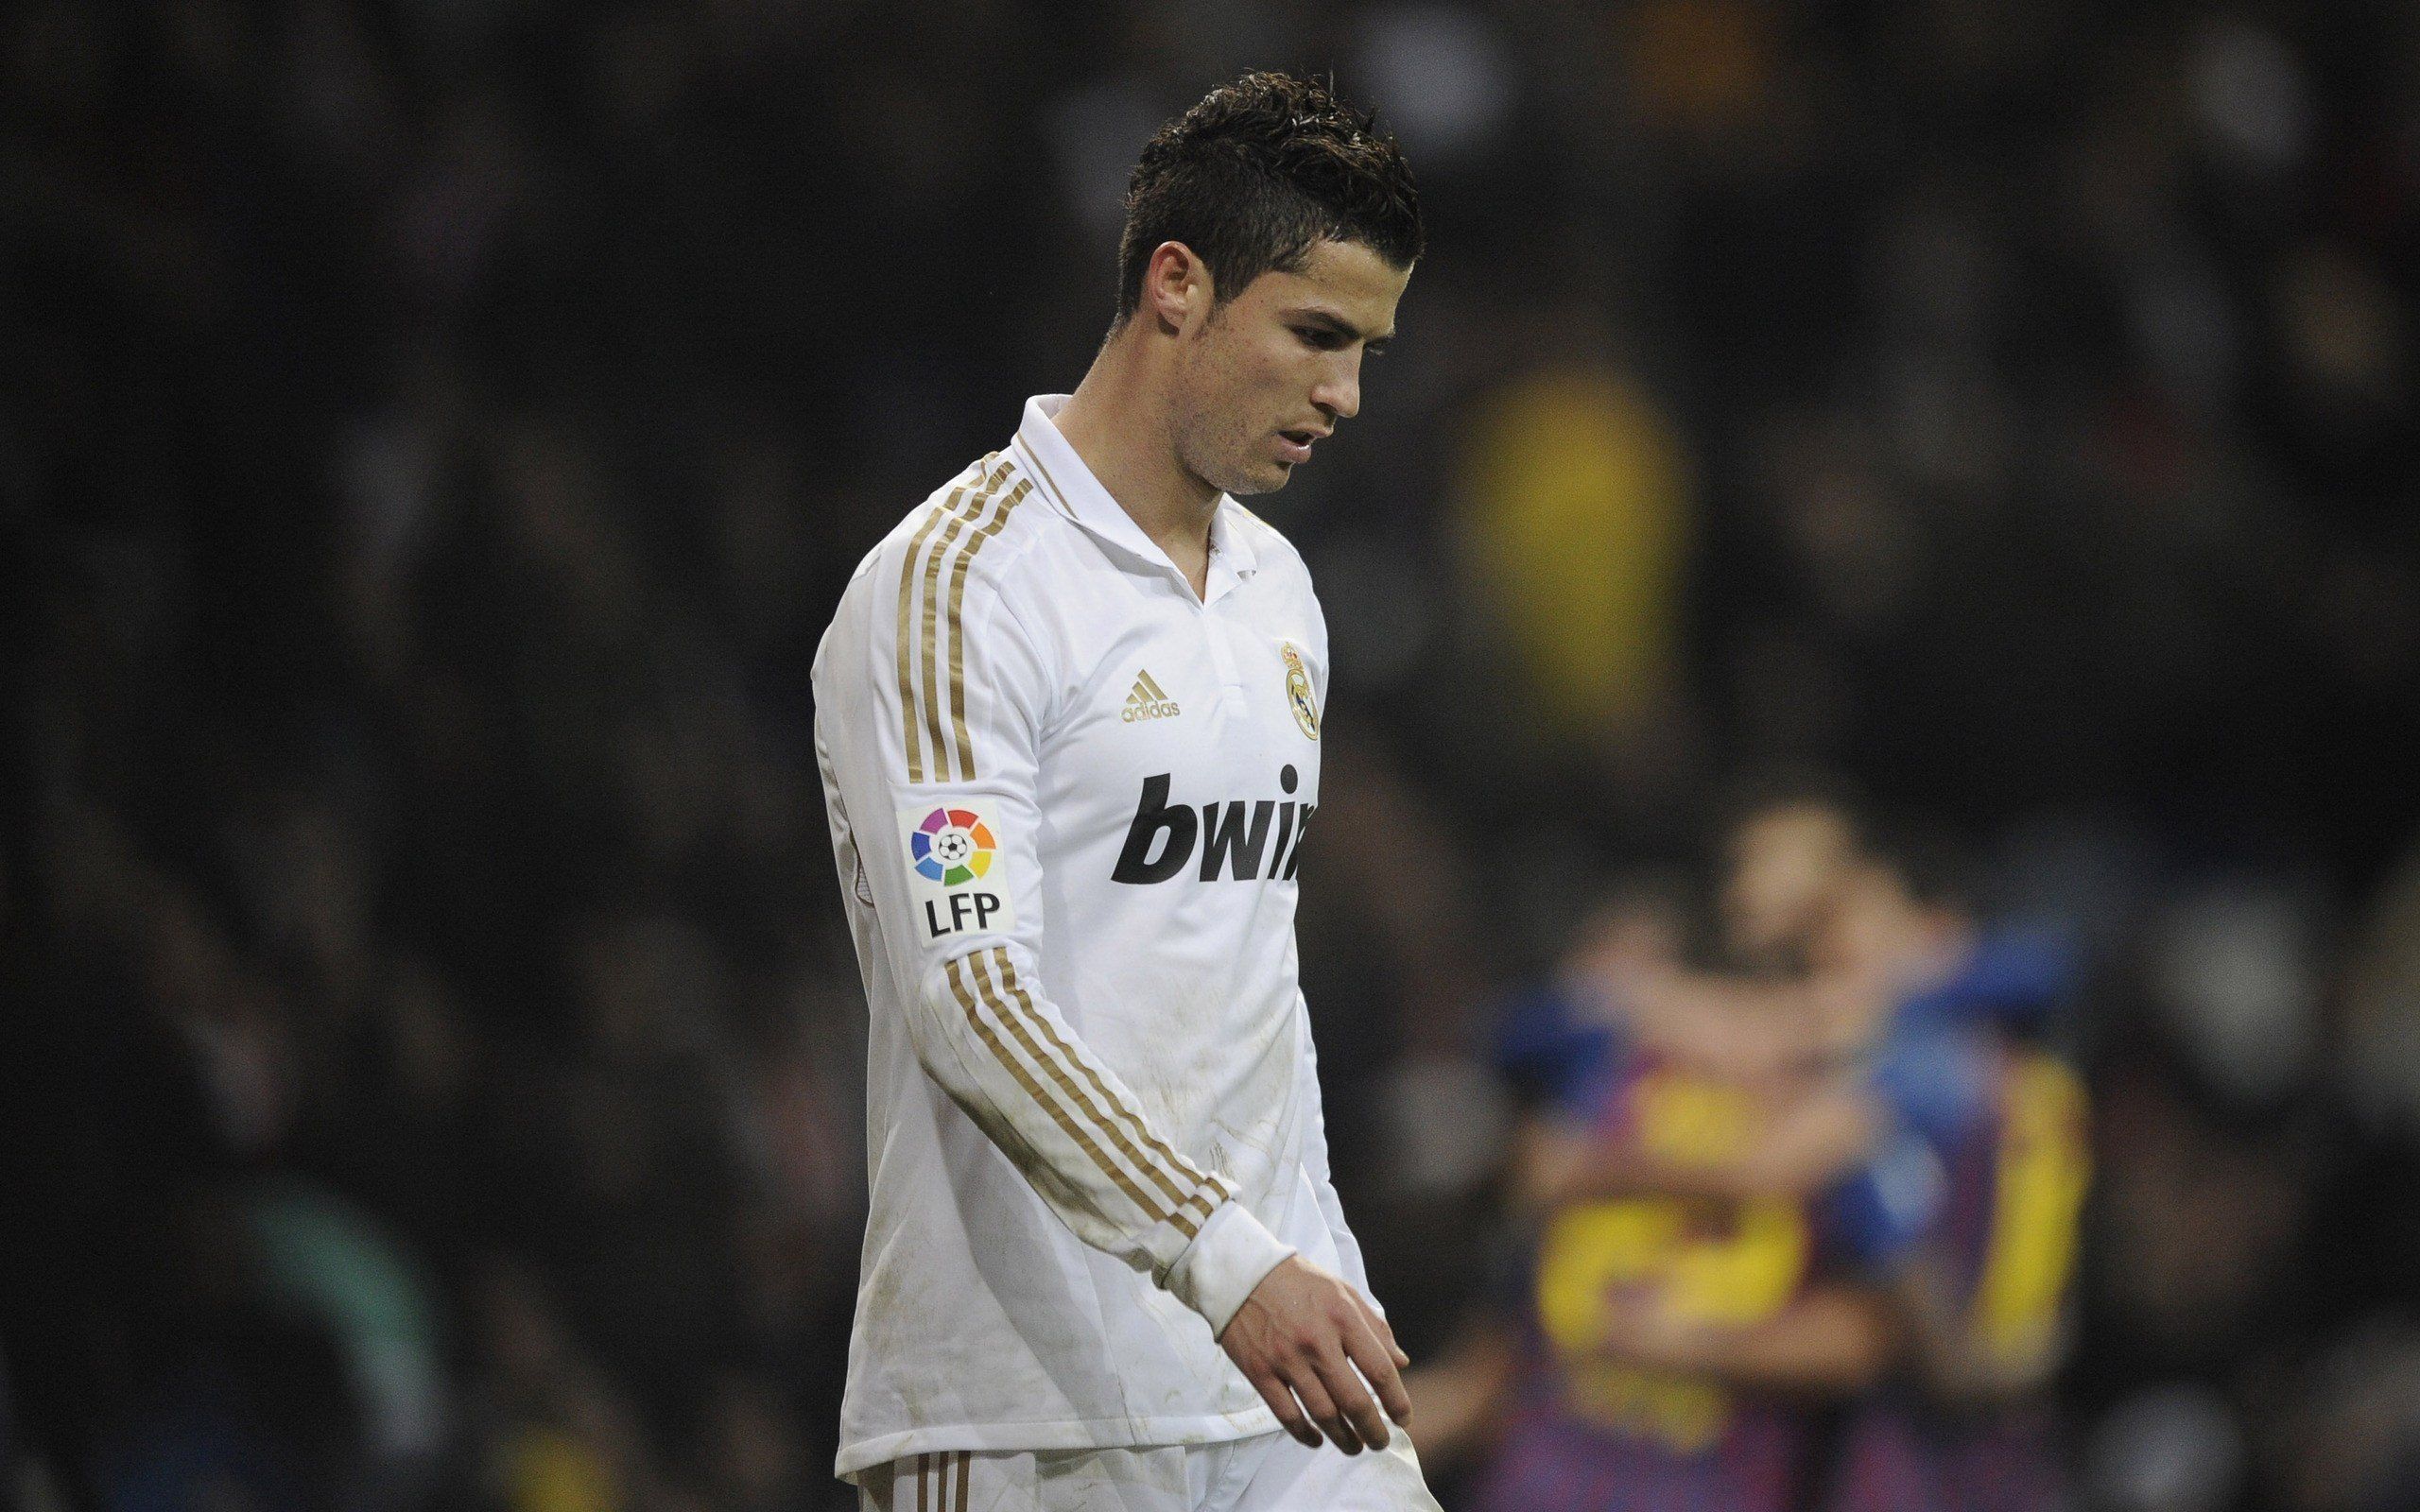 Pantalla panorámica, Fondo de pantalla de Cristiano Ronaldo, Imágenes HD Ronaldo, Fútbol